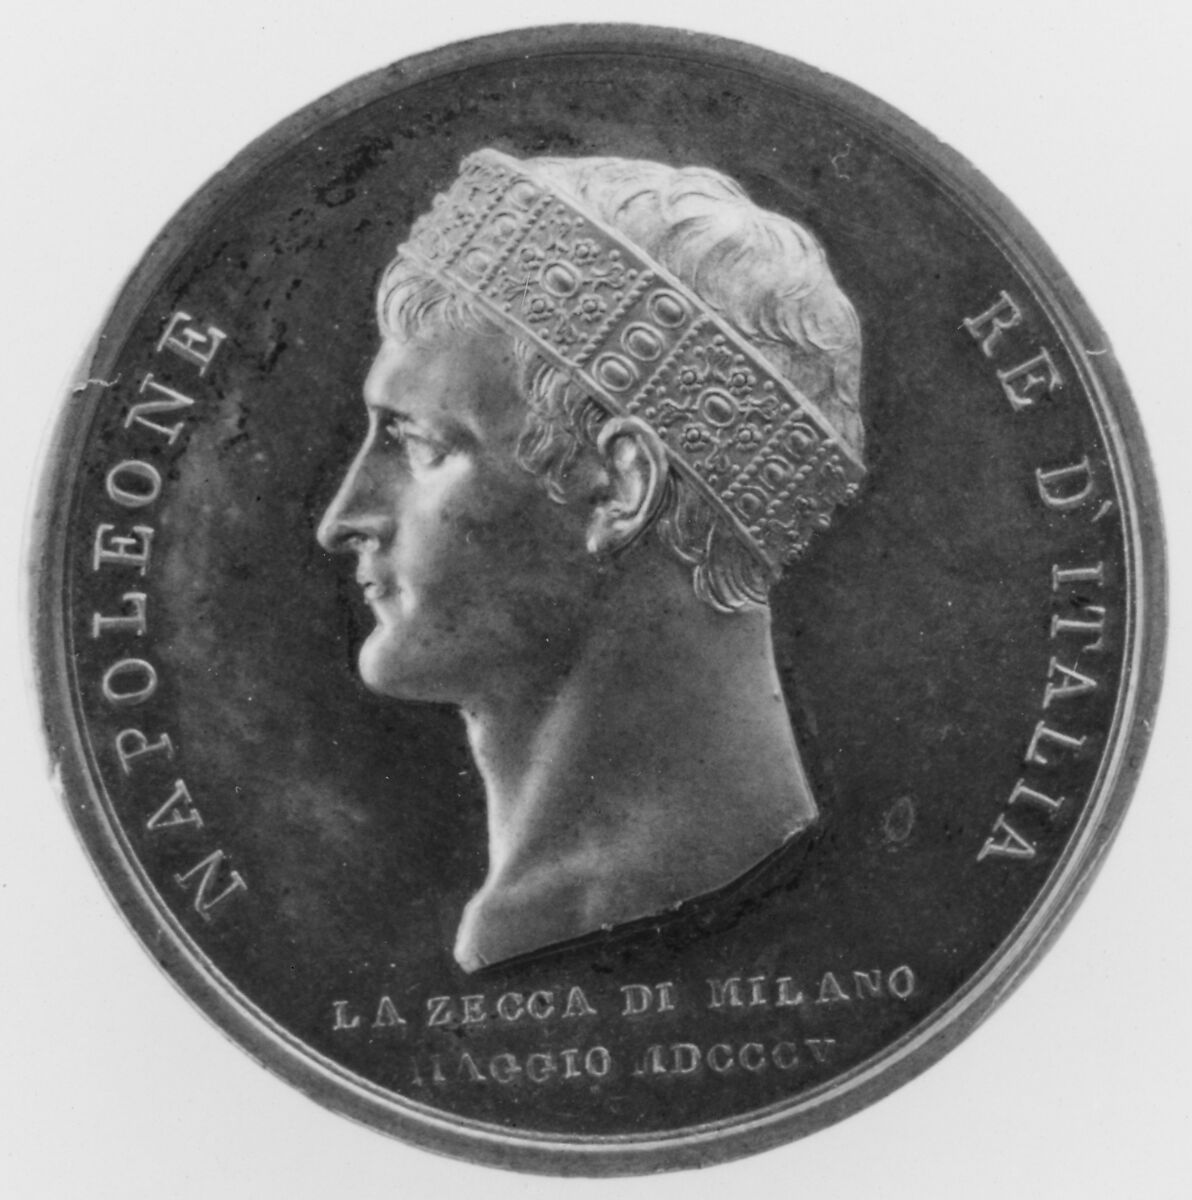 Napoleon, King of Italy, Wearing Iron Crown of Monza, Luigi Manfredini  Italian, Bronze, struck, Italian, Milan